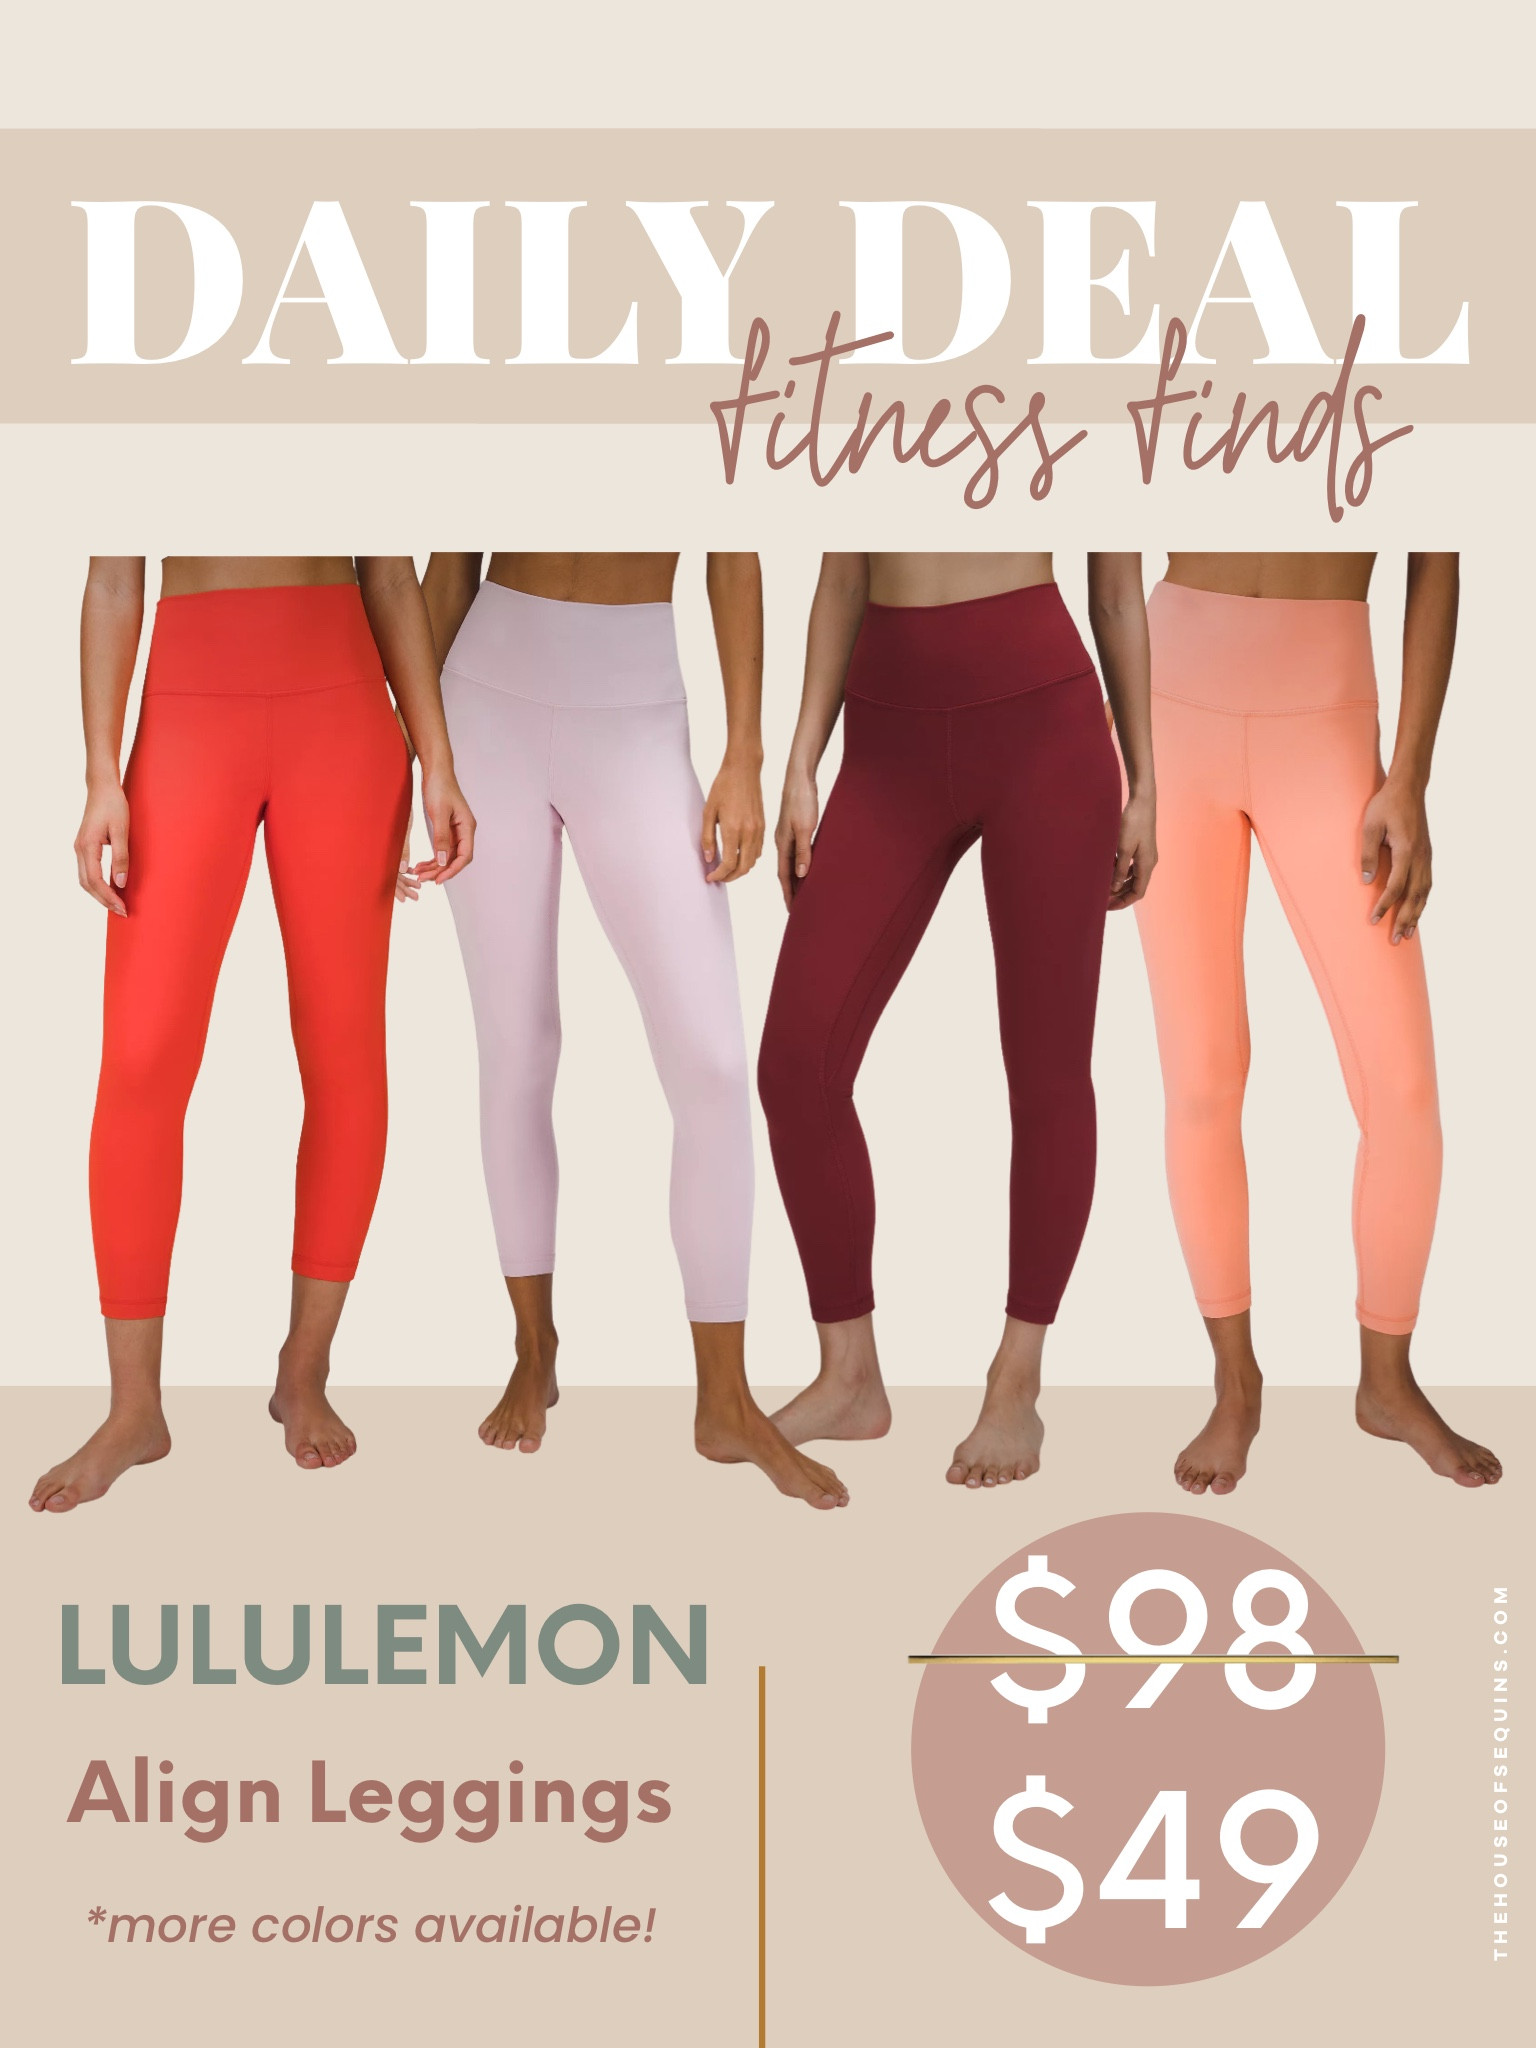 lululemon Align Leggings on Sale - As Low As $49 Each!